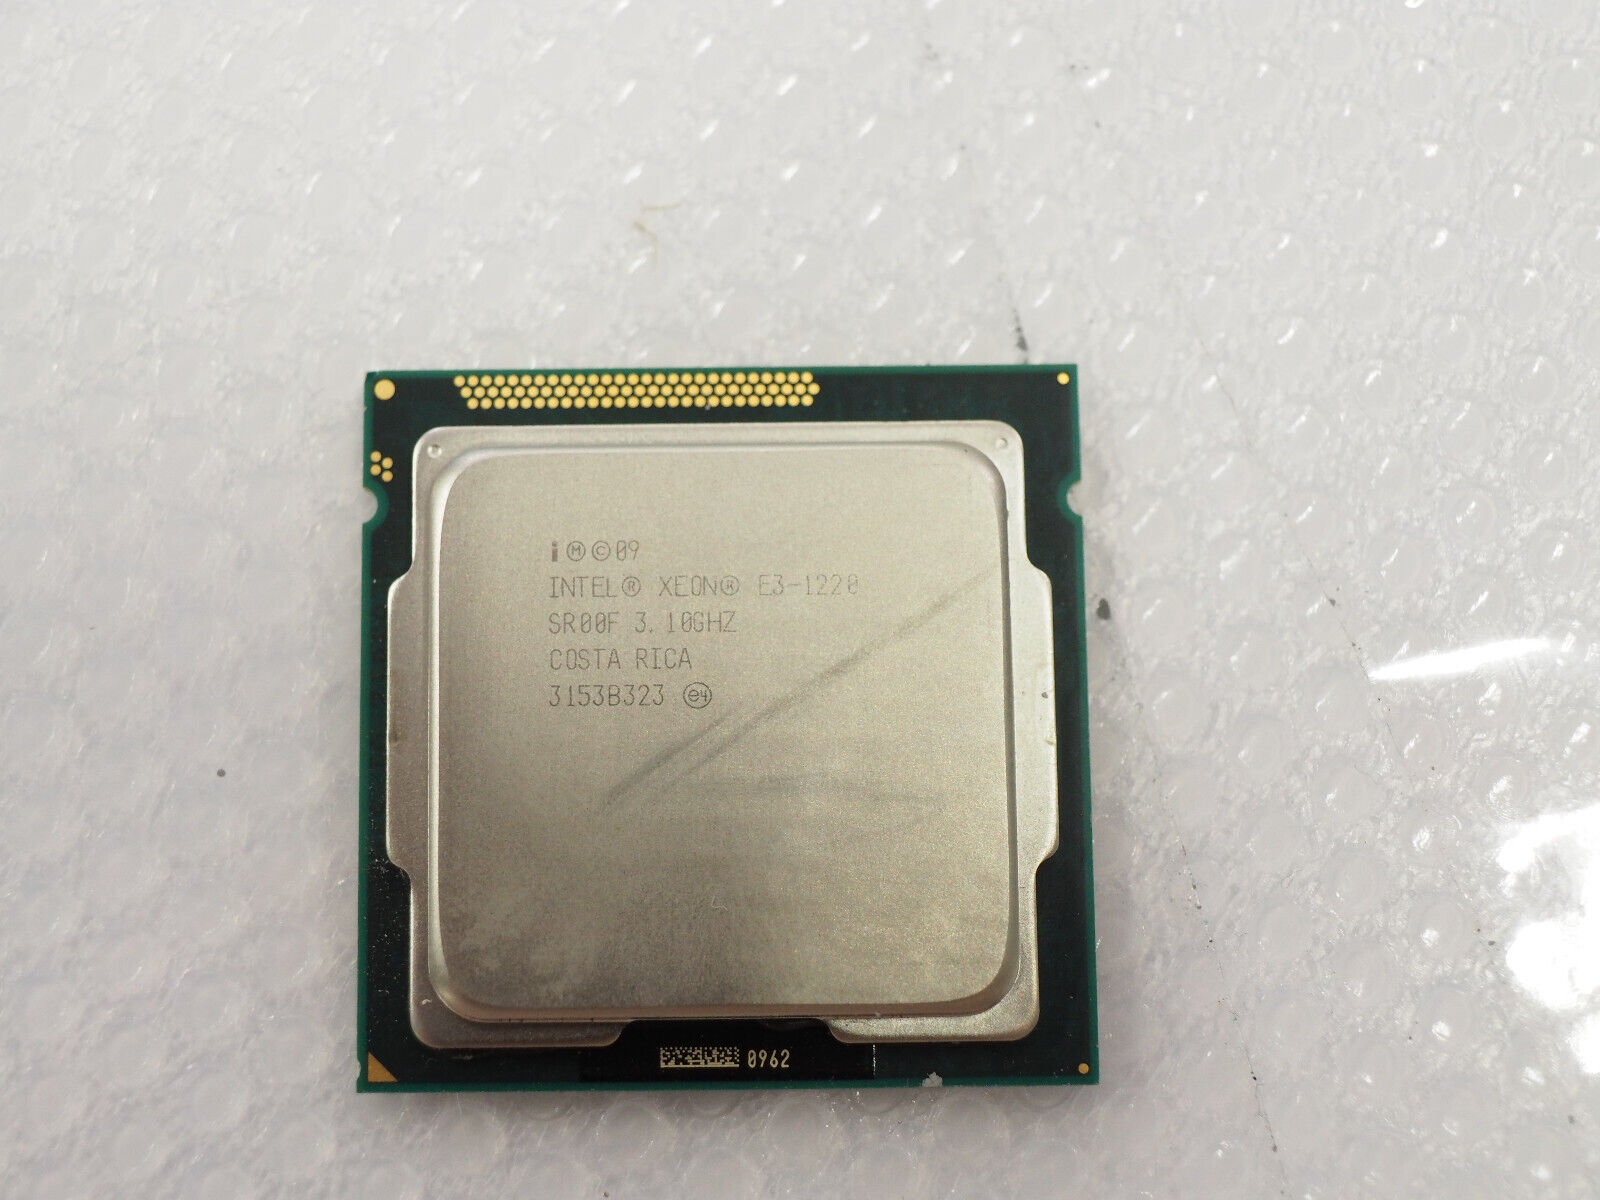 Intel XEON E3-1220 3.10GHz SR00F LGA1155 Quad-Core Processor